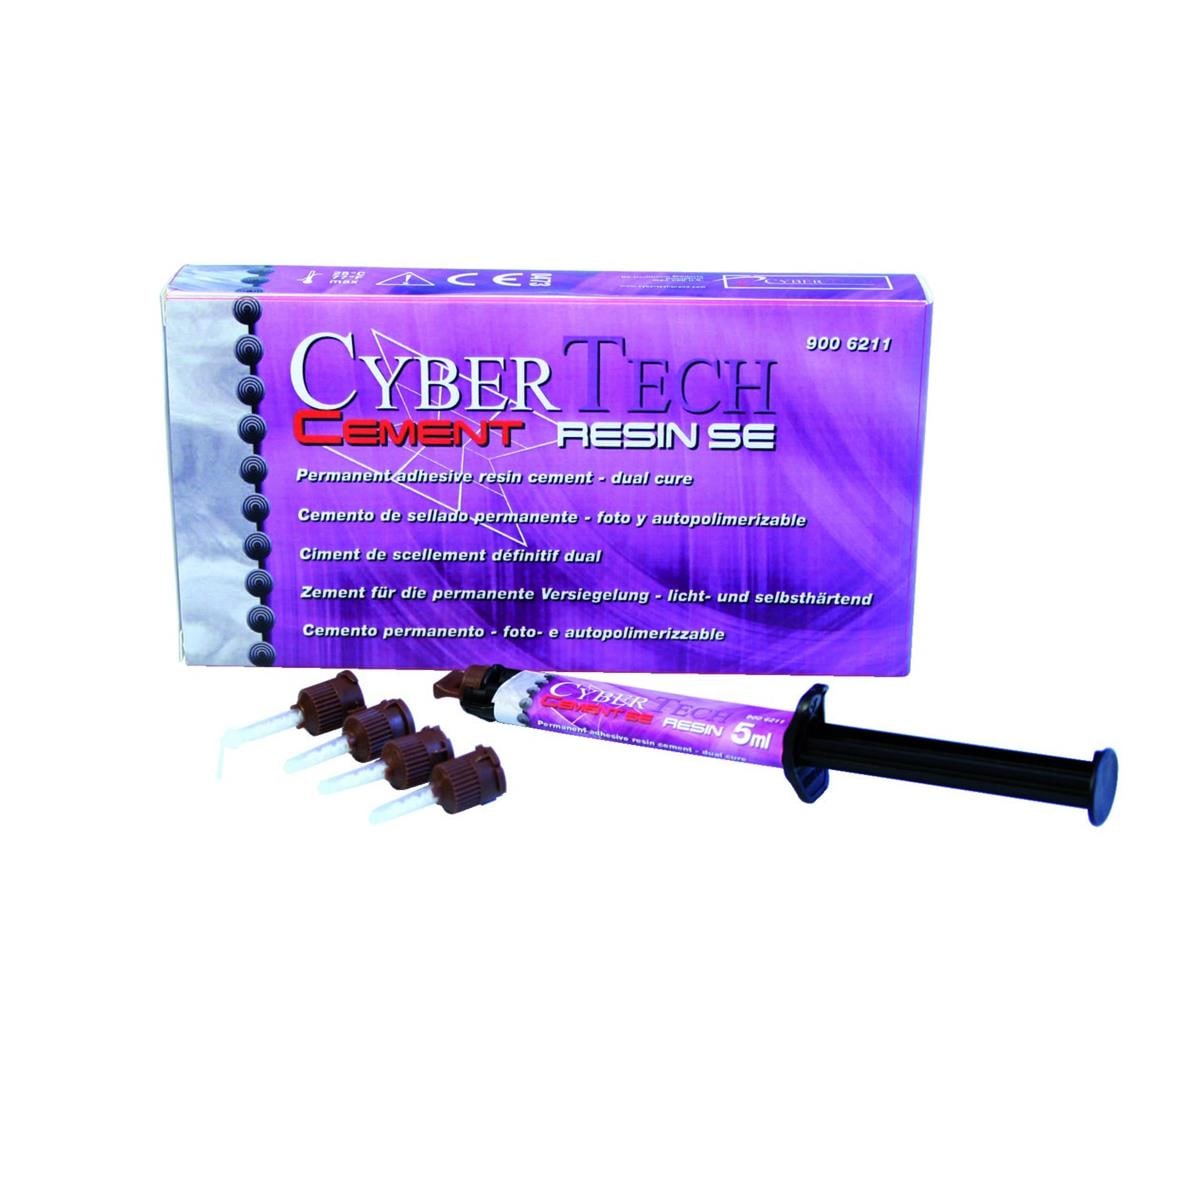 Cyber Resin Cement SE CYBERTECH - Coffret